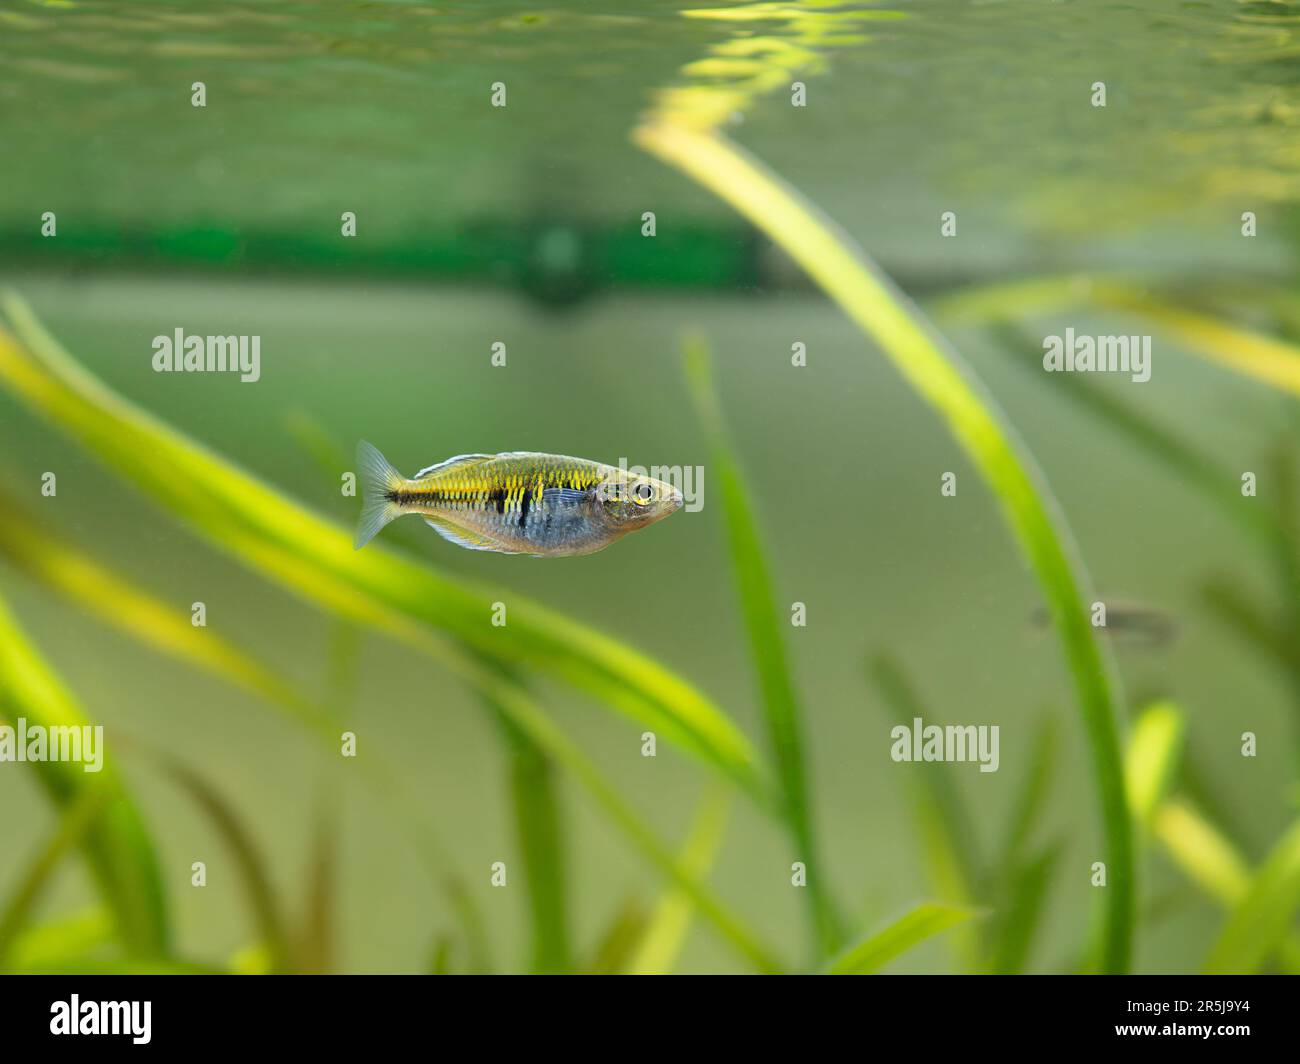 Boeseman's rainbowfish (Melanotaenia boesemani) isolated on a fish tank with blurred background Stock Photo